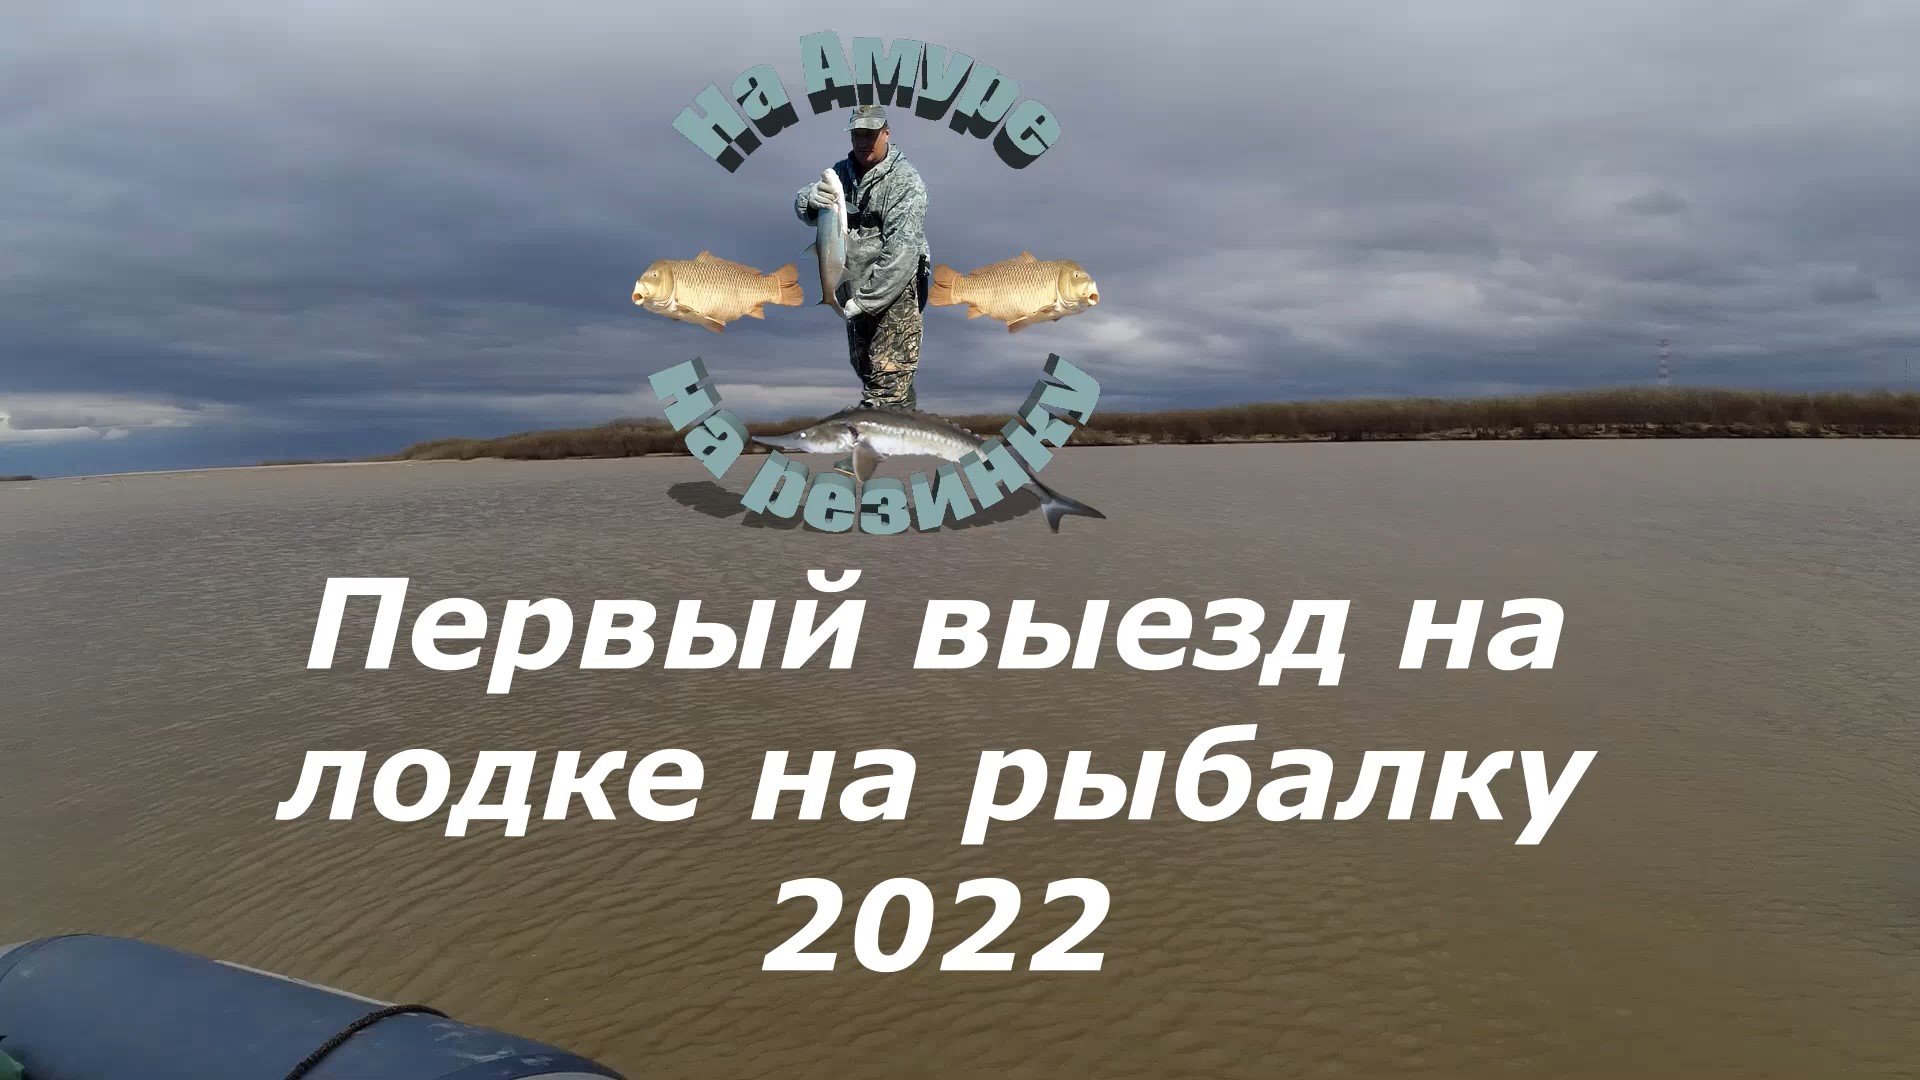 Первый выезд на лодке на рыбалку 2022 году . mp4